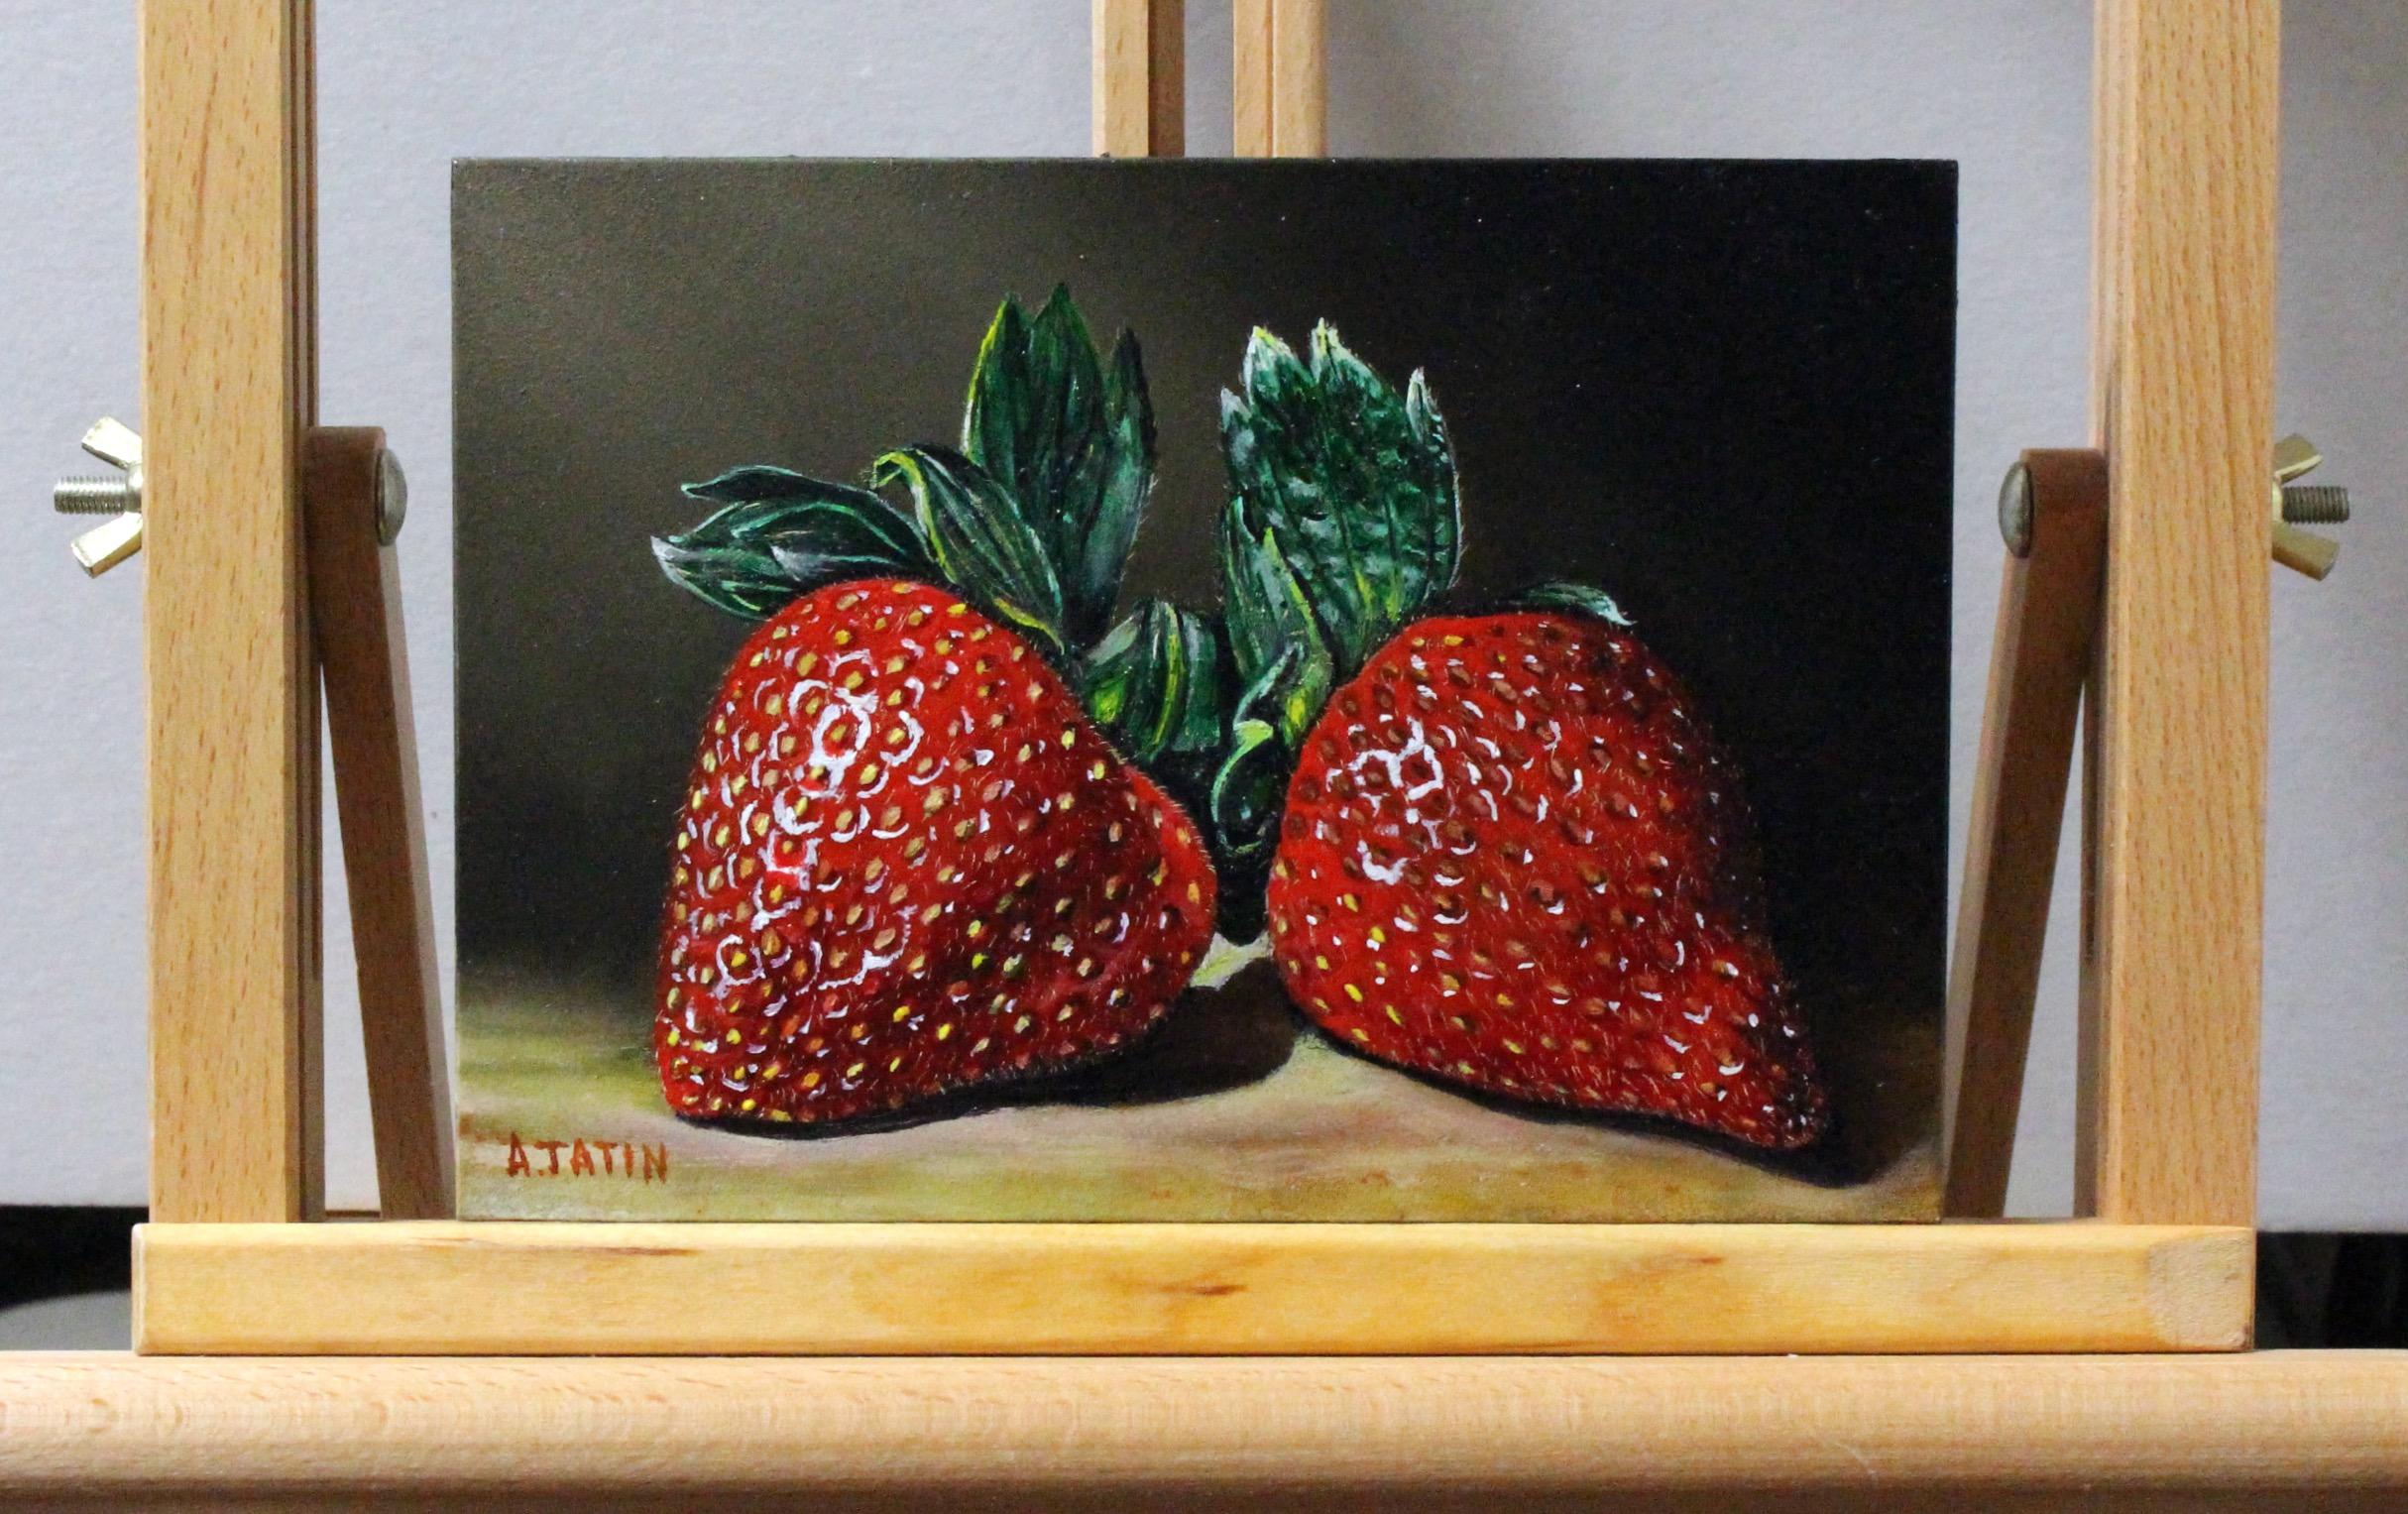 <p>Kommentare des KünstlersZwei pralle Erdbeeren ziehen mit ihren leuchtenden Rottönen und üppigen grünen Kronen die Aufmerksamkeit auf sich.<br> Das Licht enthüllt ihre glänzende Oberfläche, während der Schatten ihrer Form Tiefe und Dimension